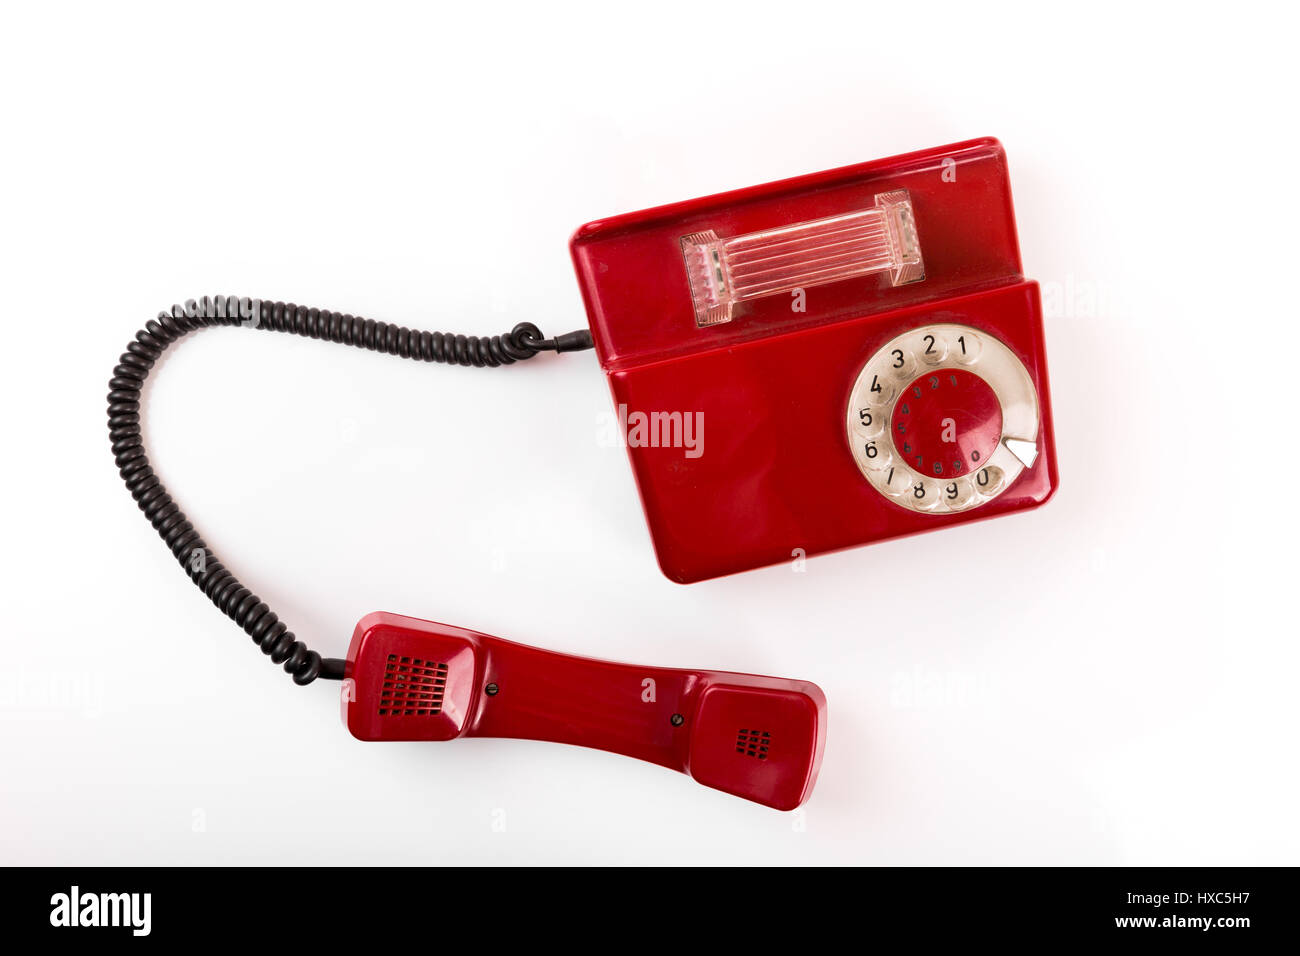 Vieux téléphone rouge avec cadran rotatif sur fond blanc Banque D'Images